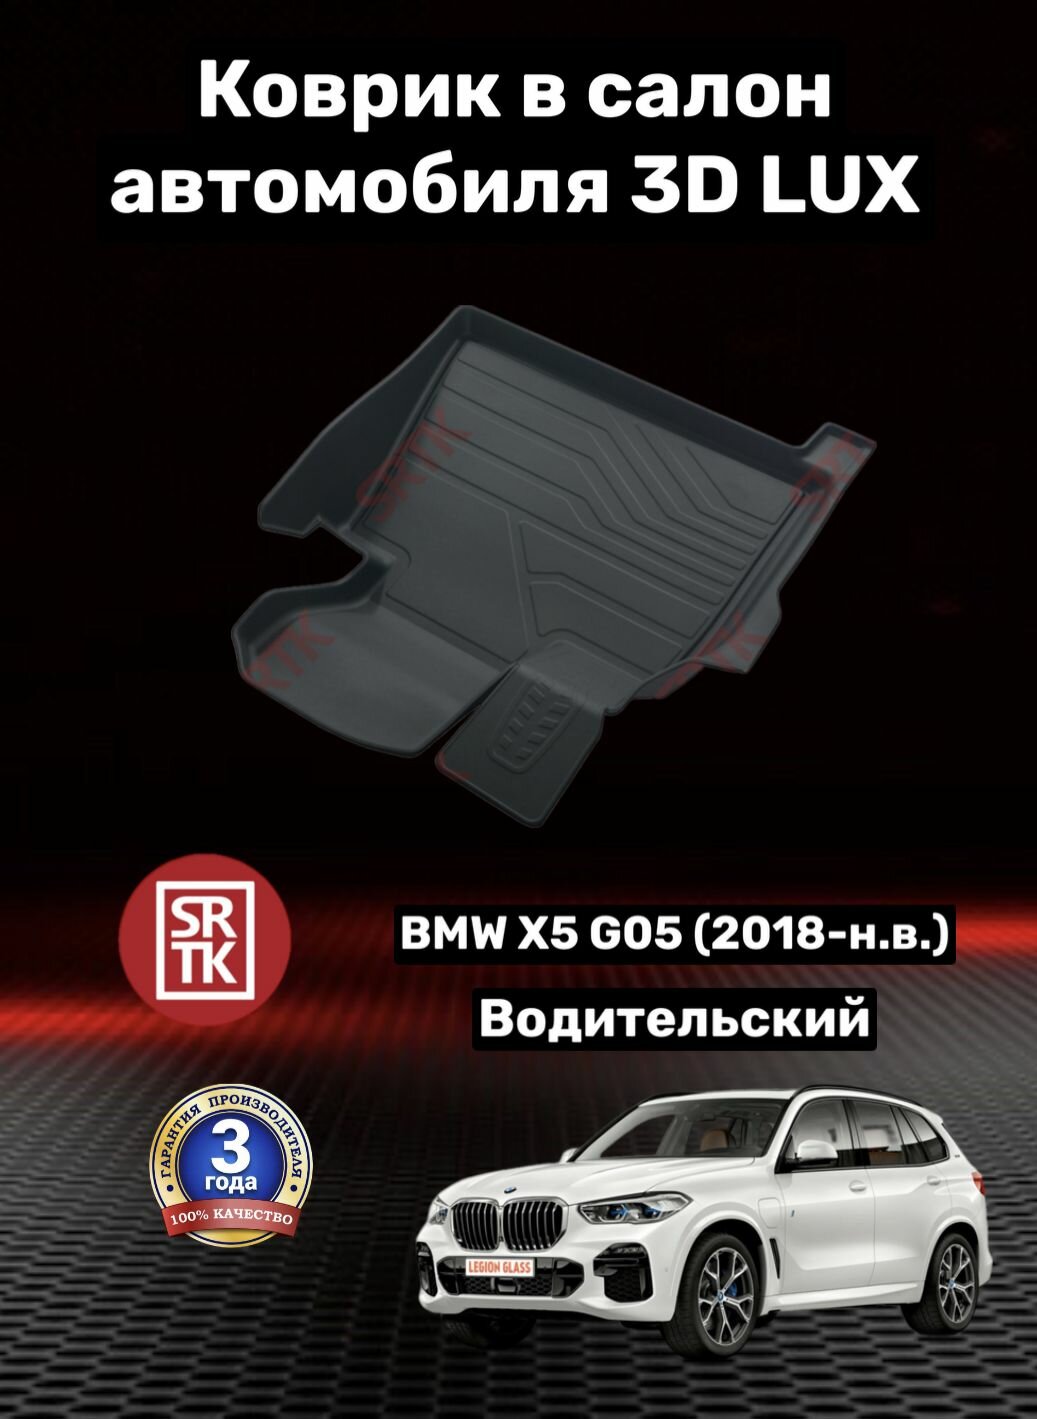 Коврик резиновый БМВ Х5 Г05 (2018-)/BMW X5 G05 3D LUX SRTK (Саранск) водительский в салон